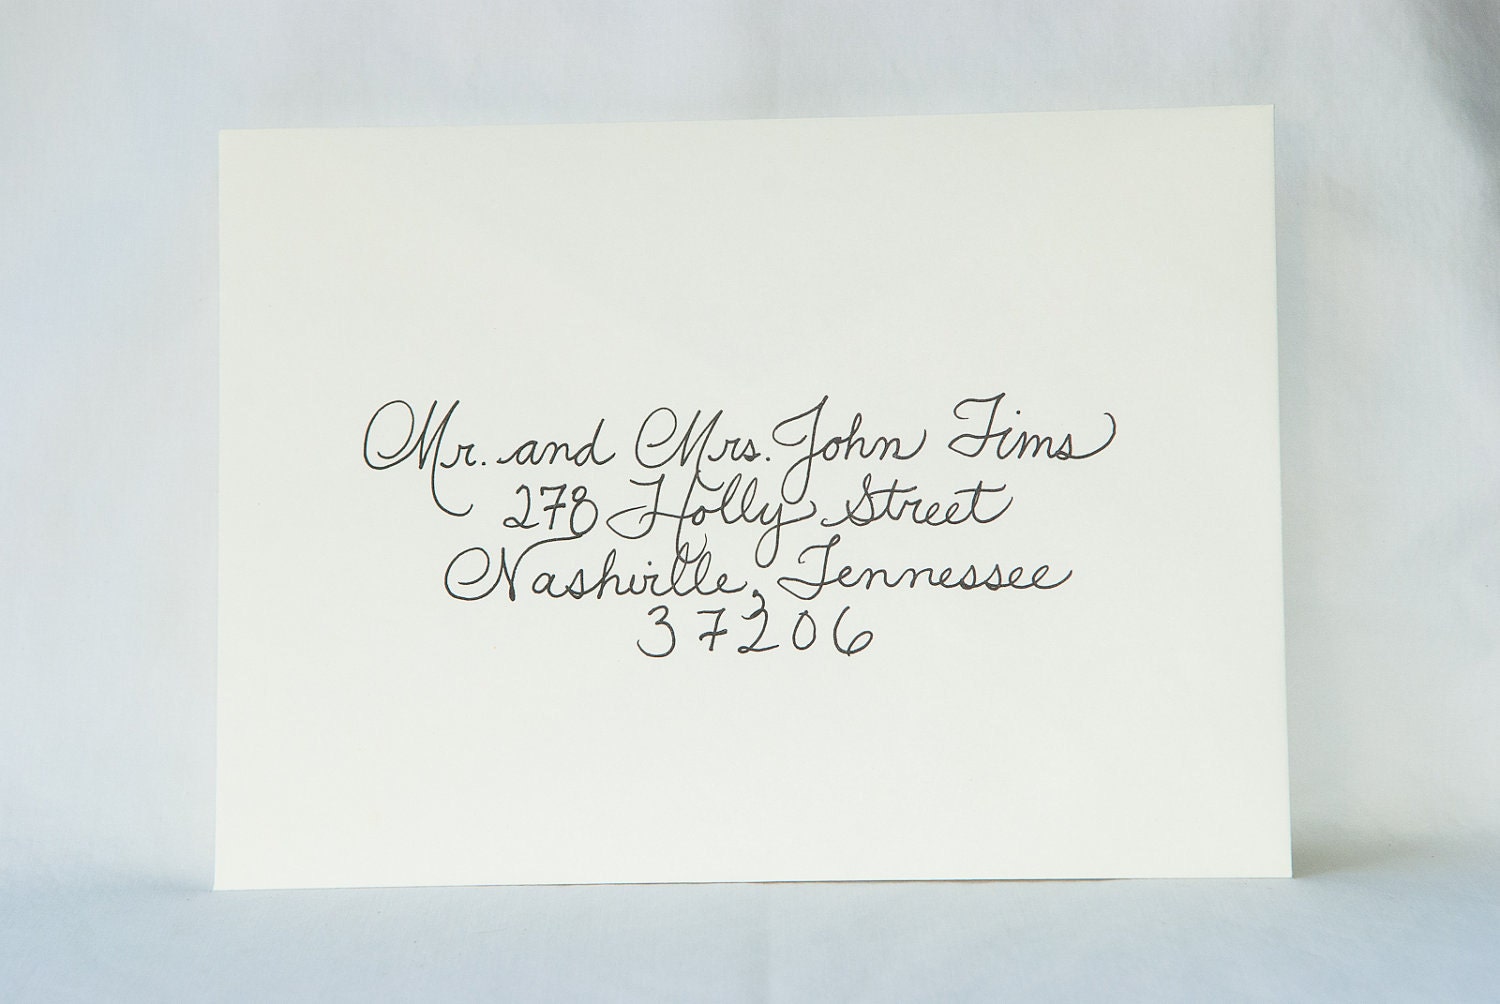 Addressing wedding invitations envelopes